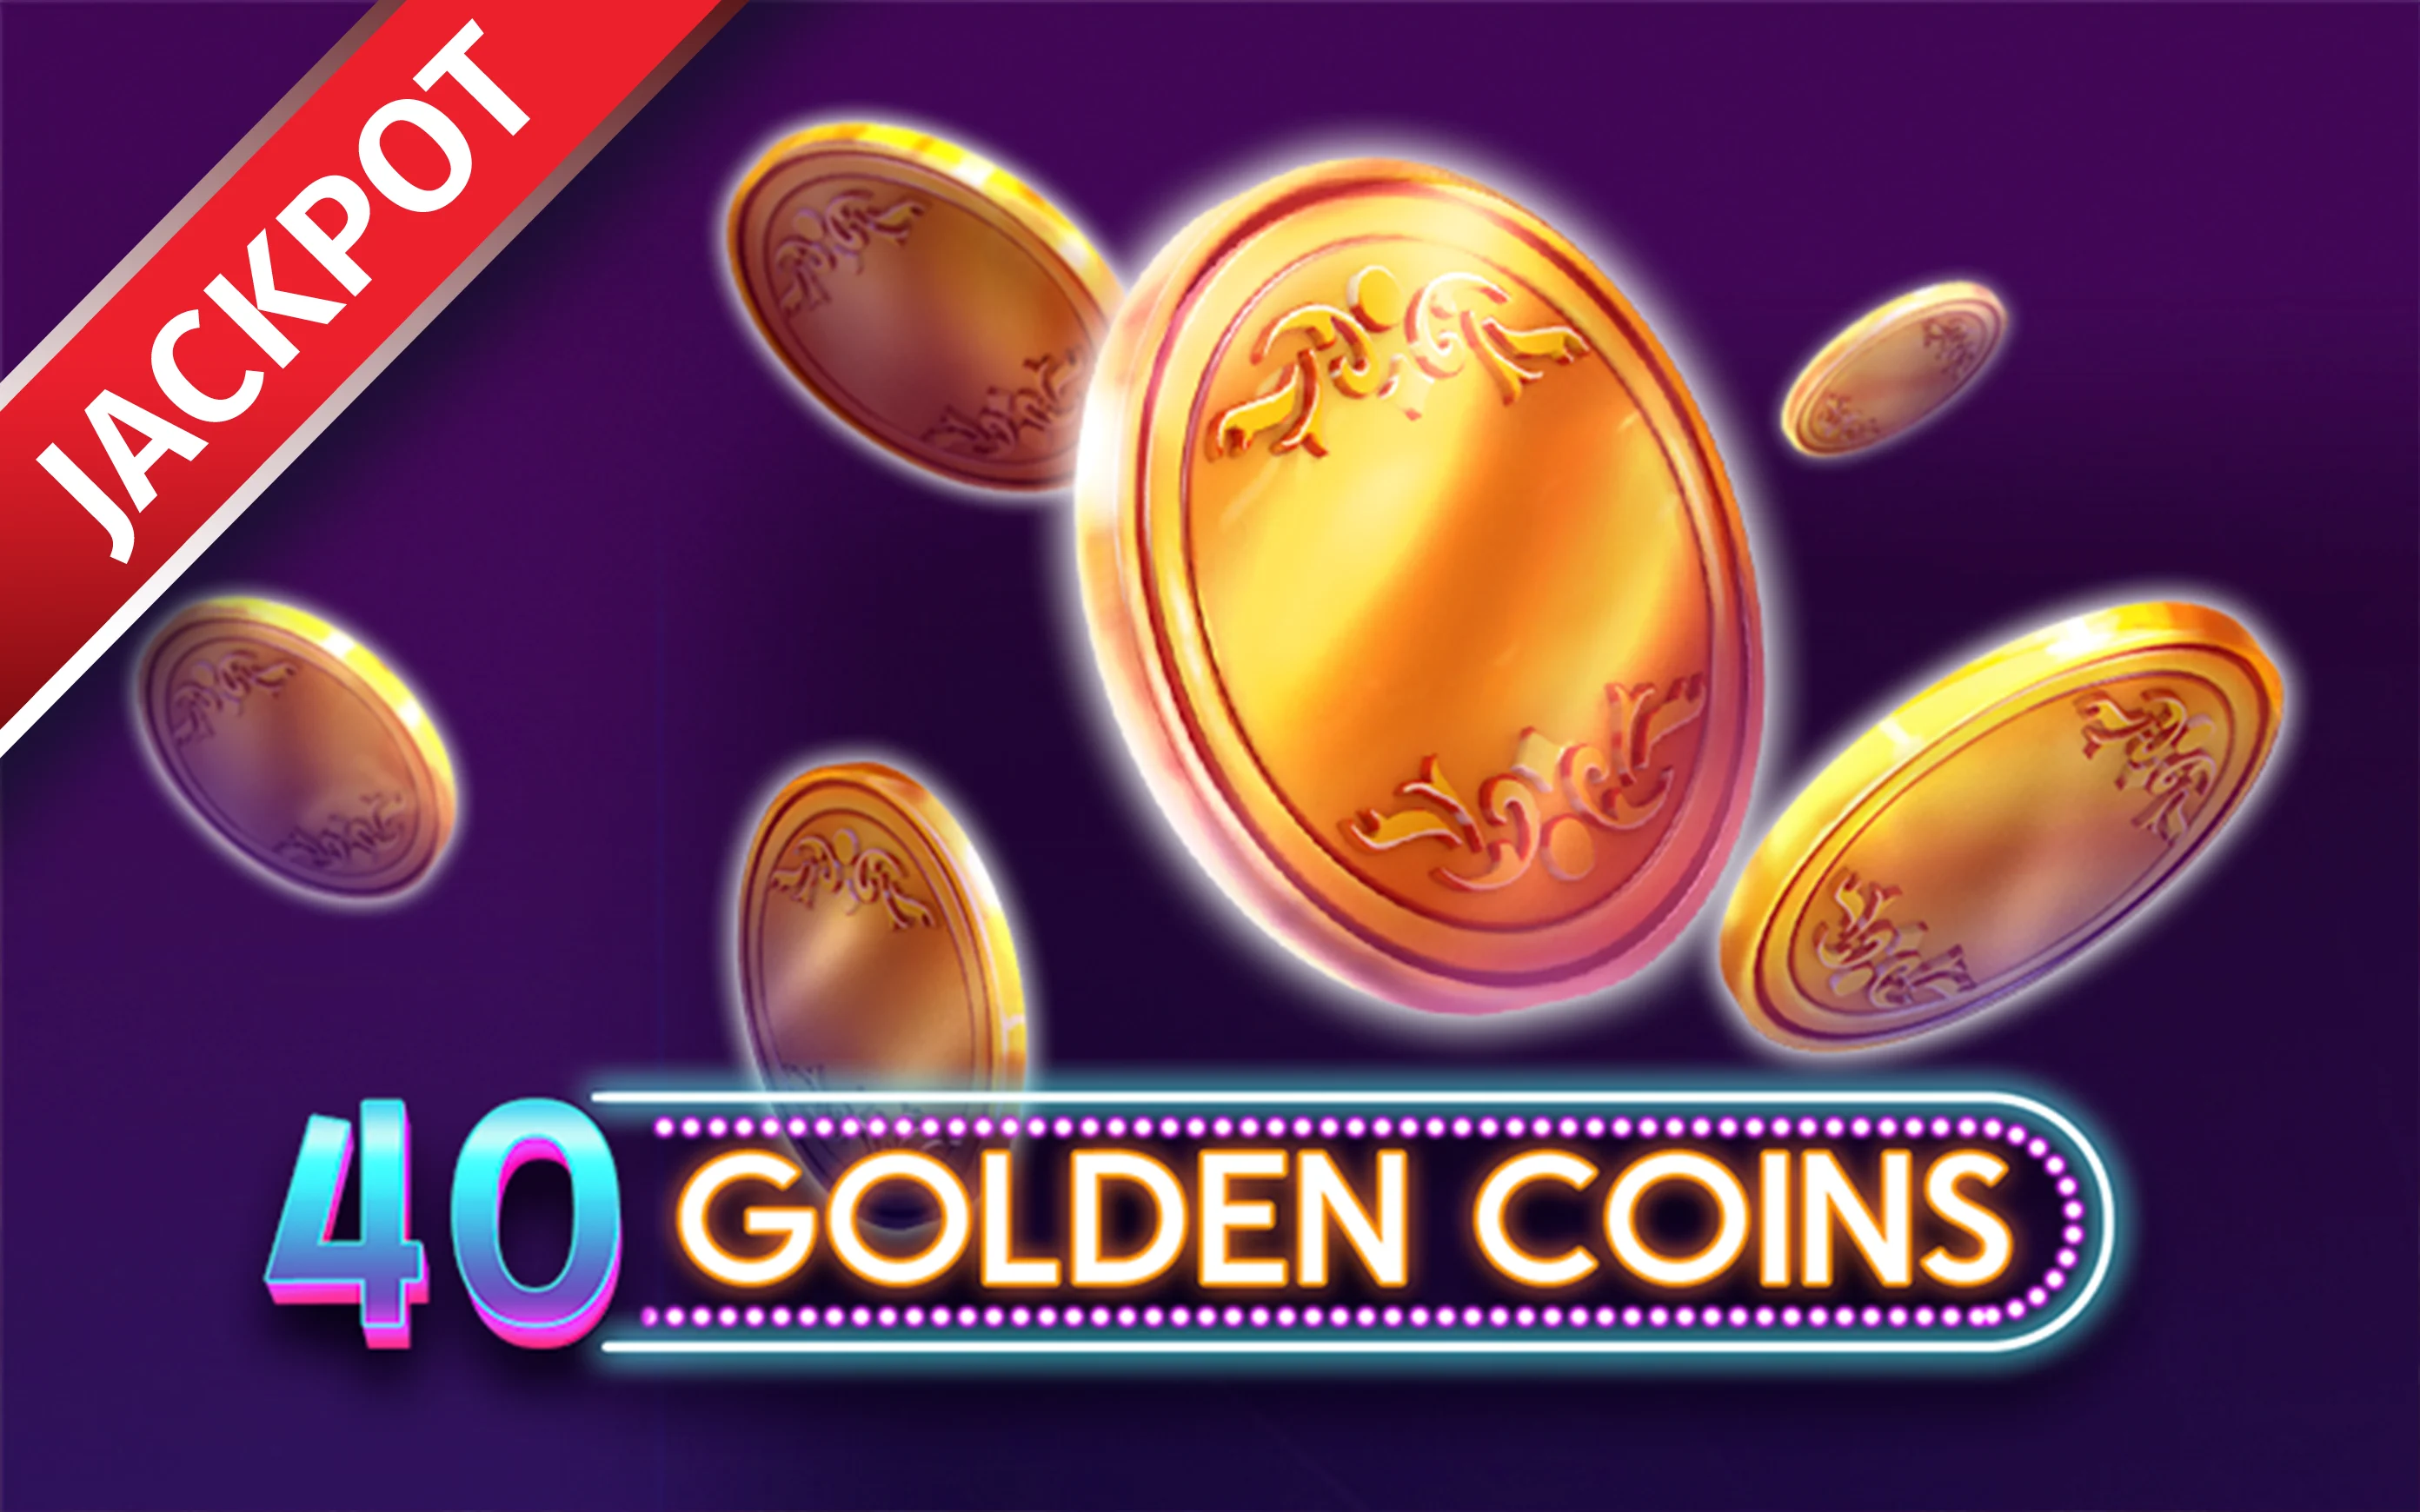 Gioca a 40 Golden Coins sul casino online Starcasino.be